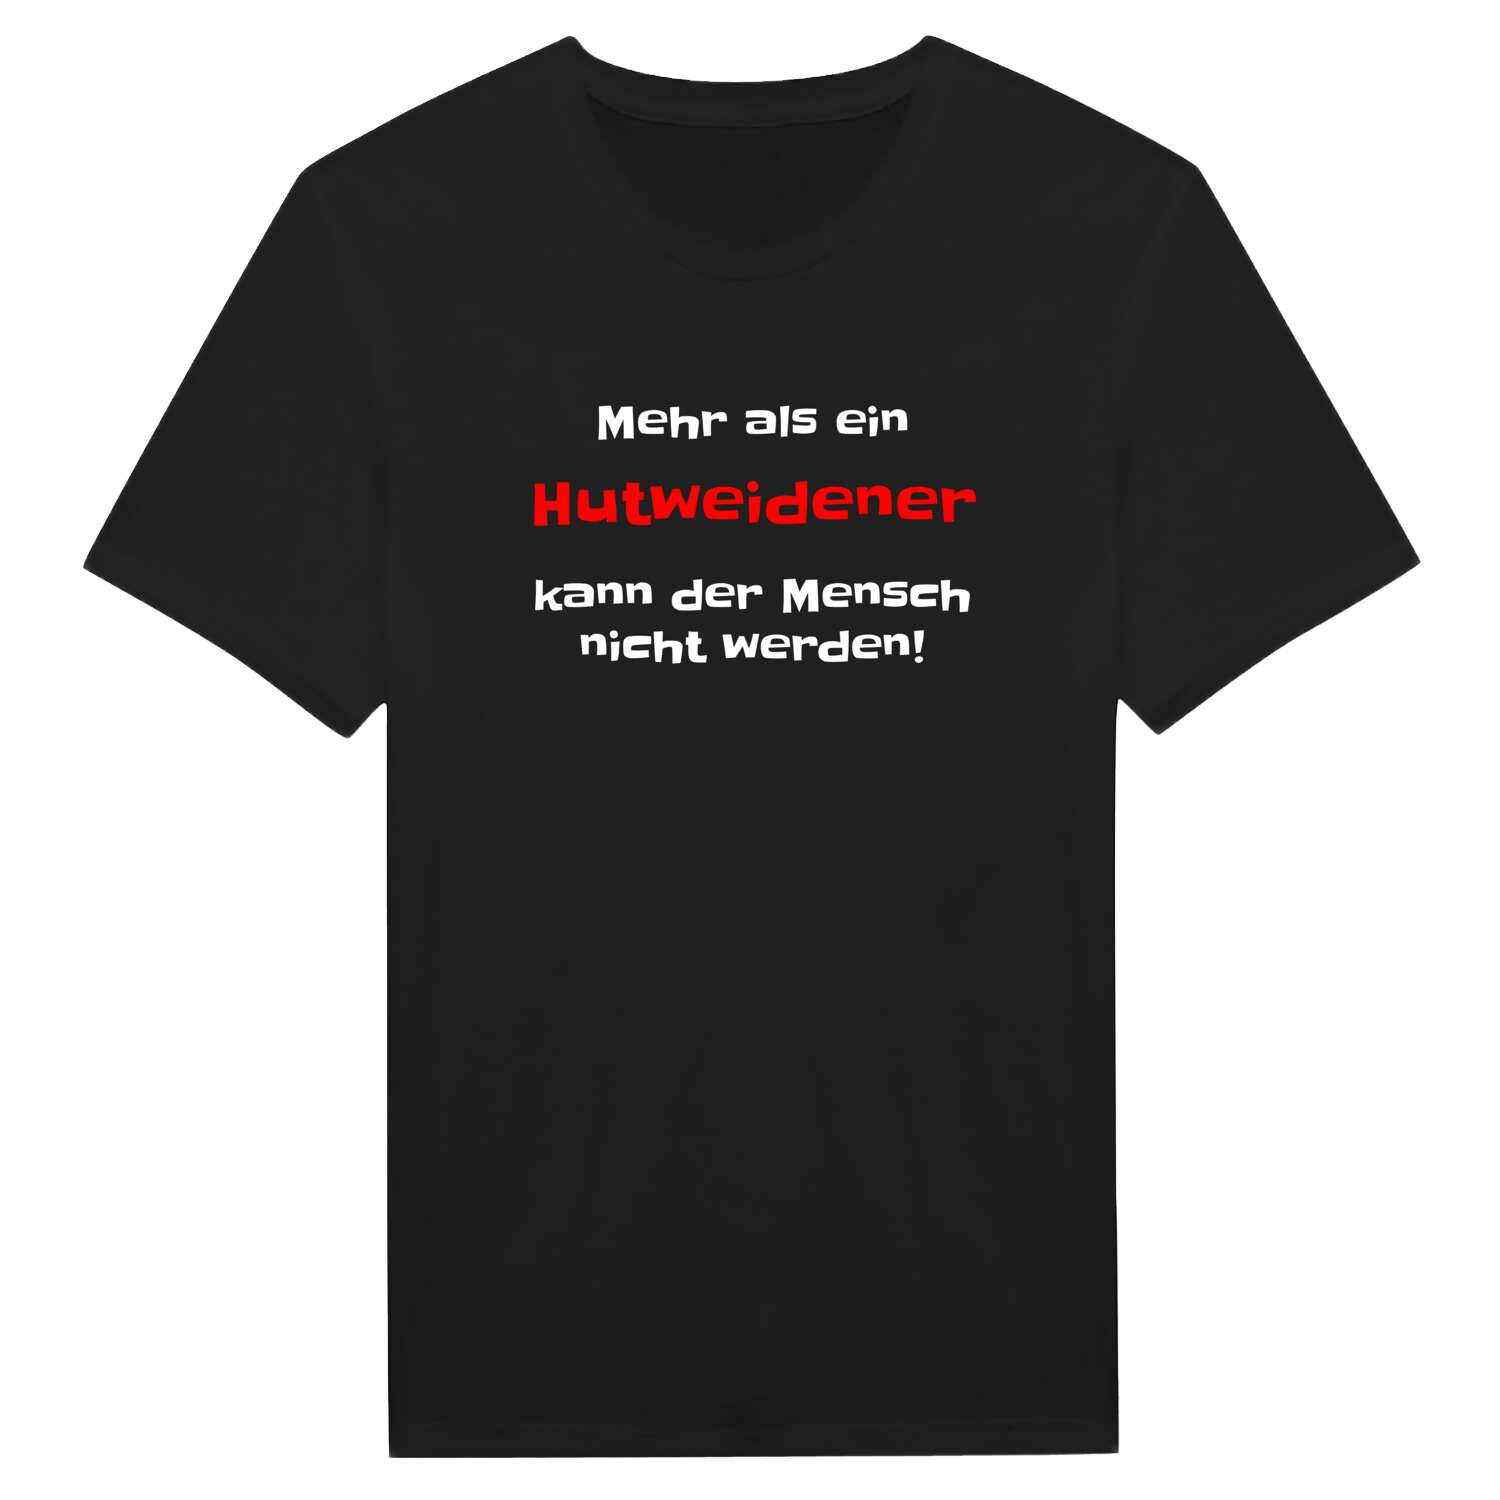 Hutweide T-Shirt »Mehr als ein«